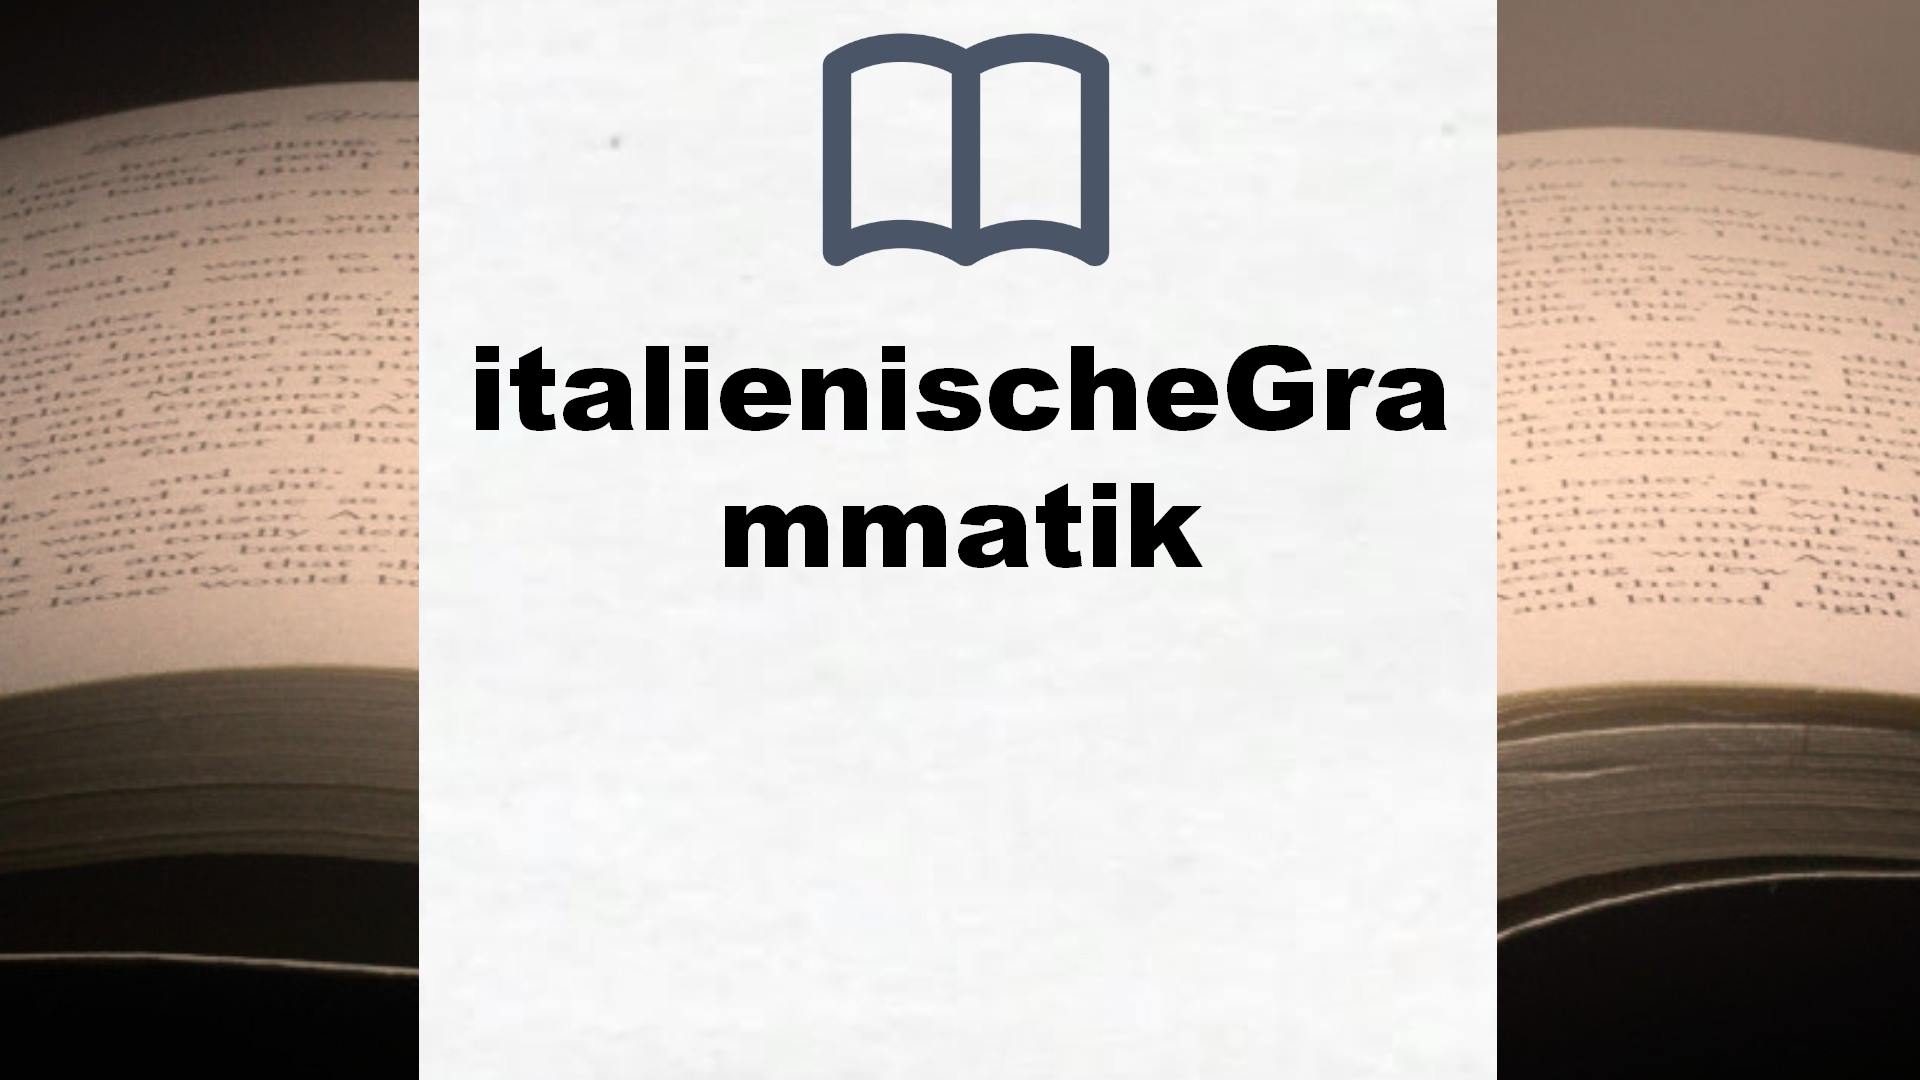 Bücher über italienischeGrammatik